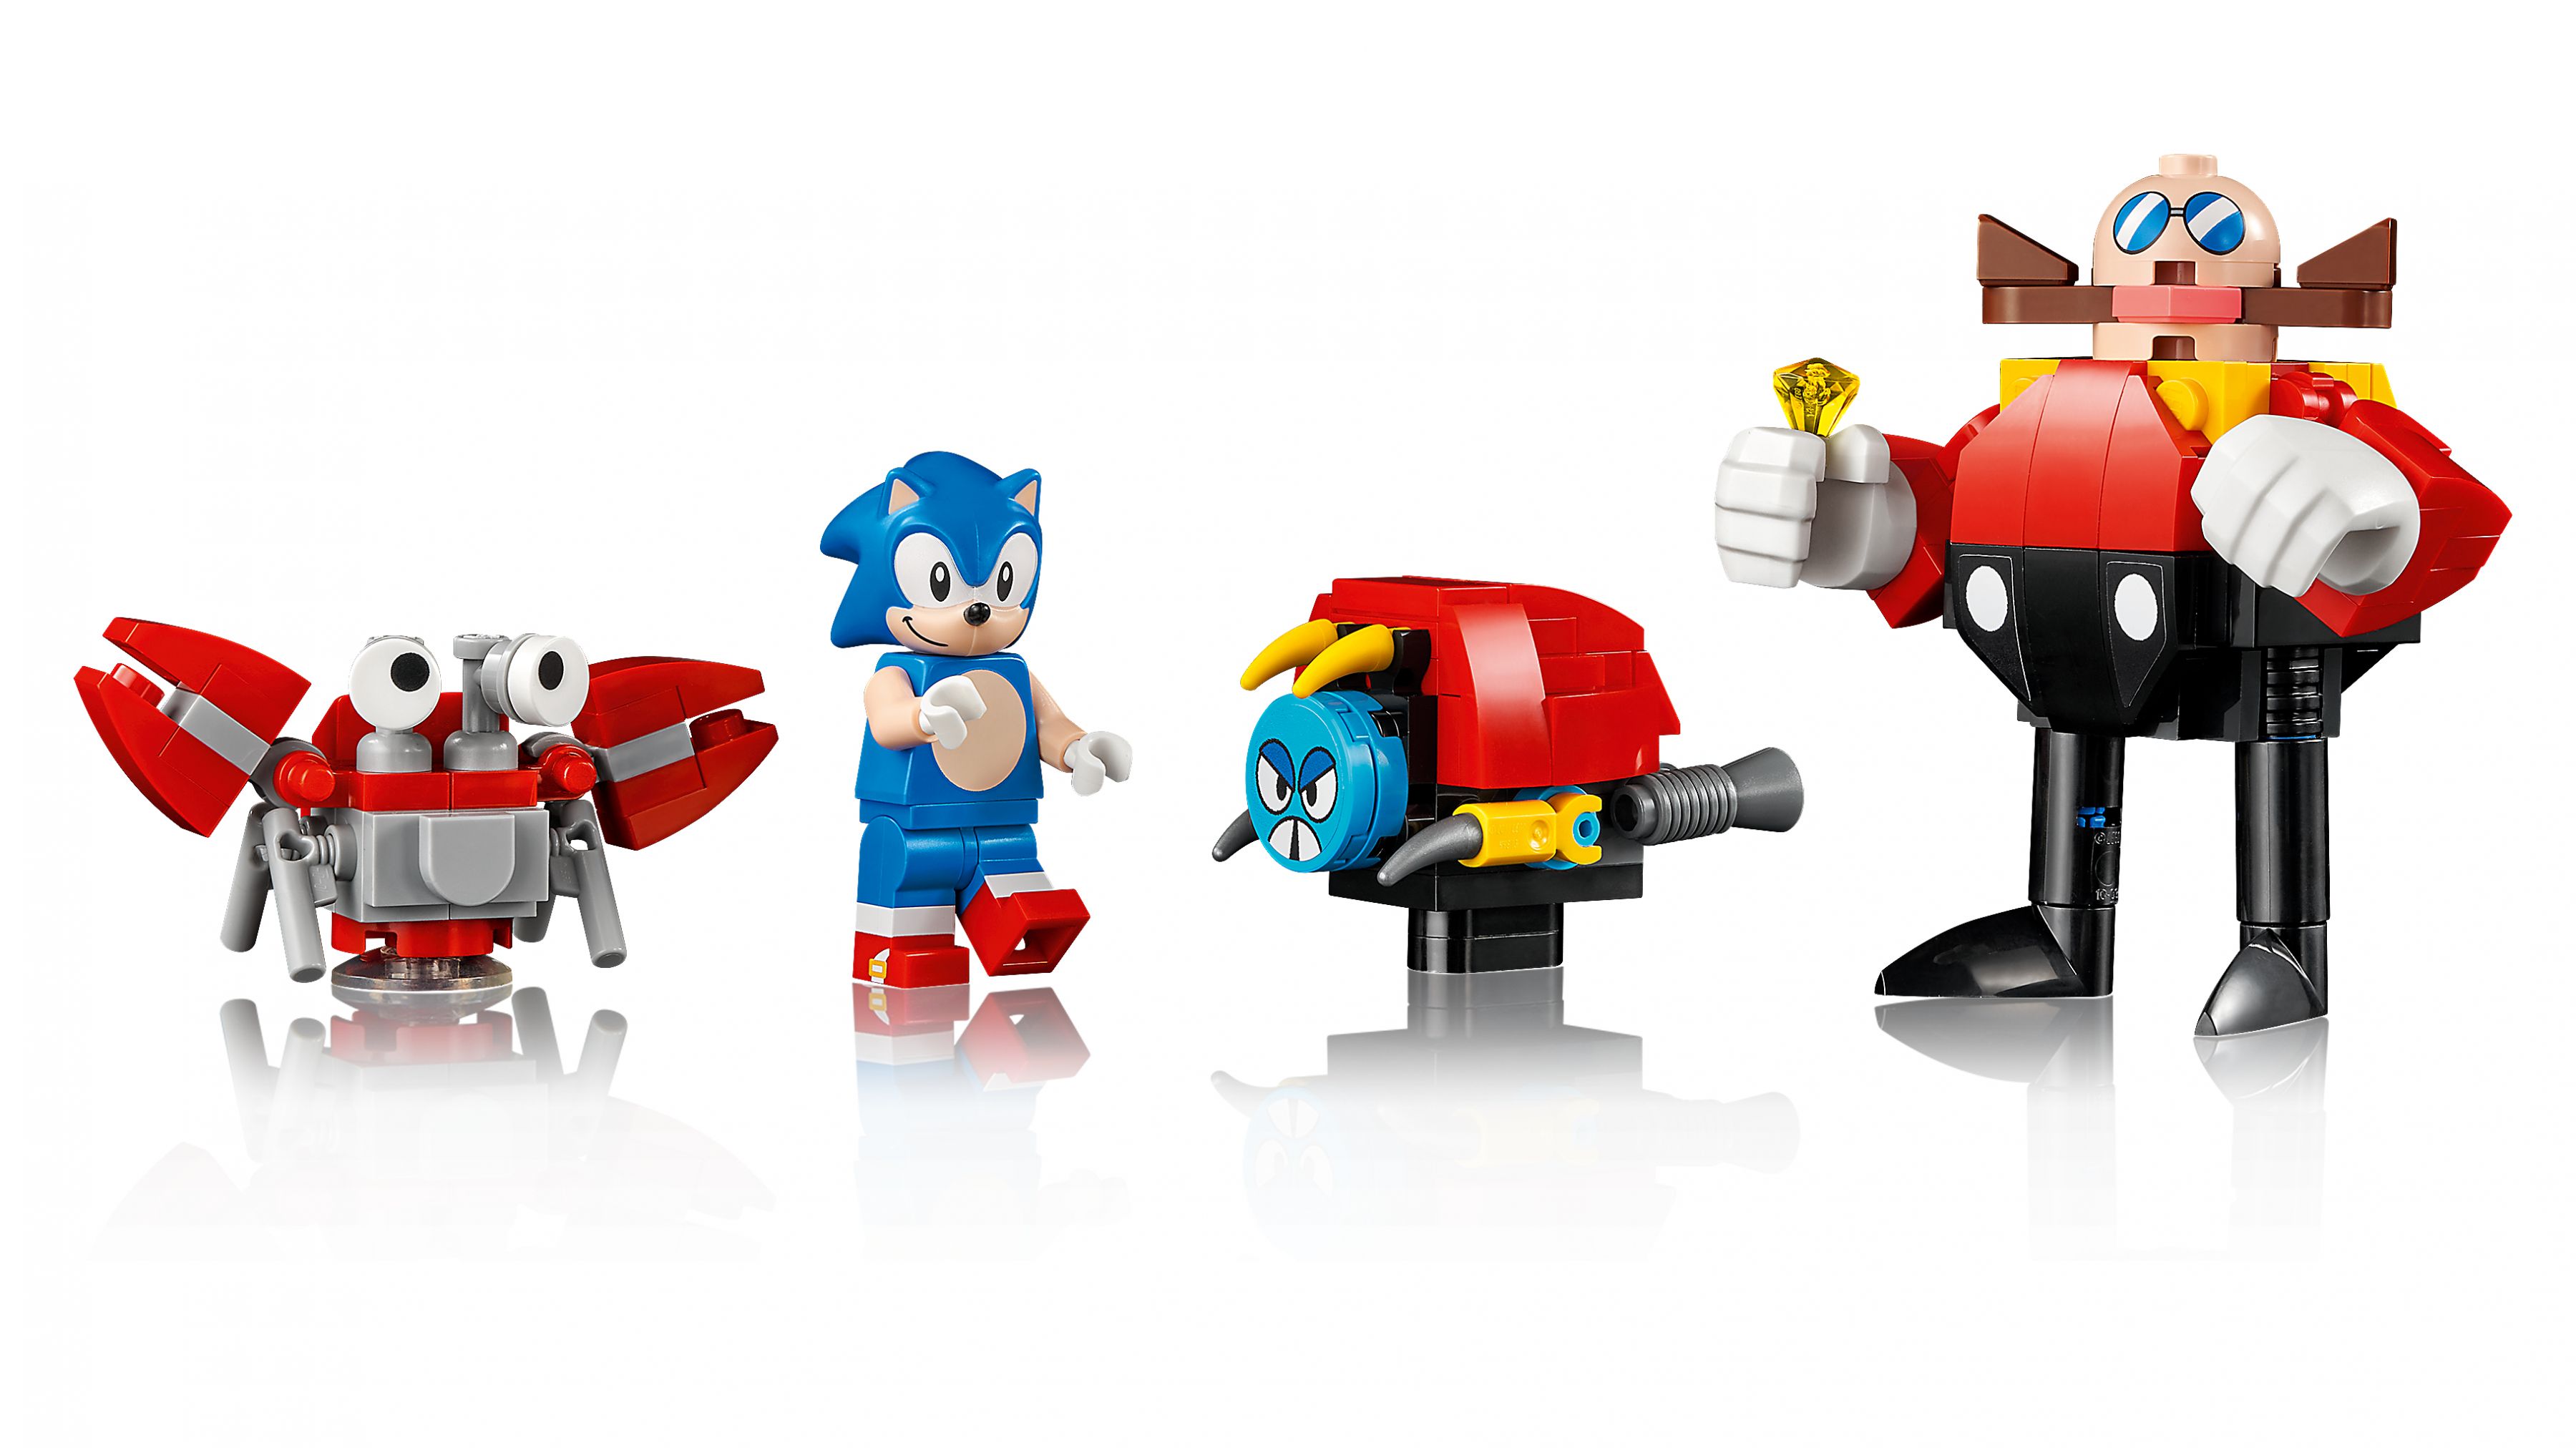 LEGO Ideas 21331 Sonic the Hedgehog™ – Green Hill Zone LEGO_21331_web_sec01_nobg.jpg